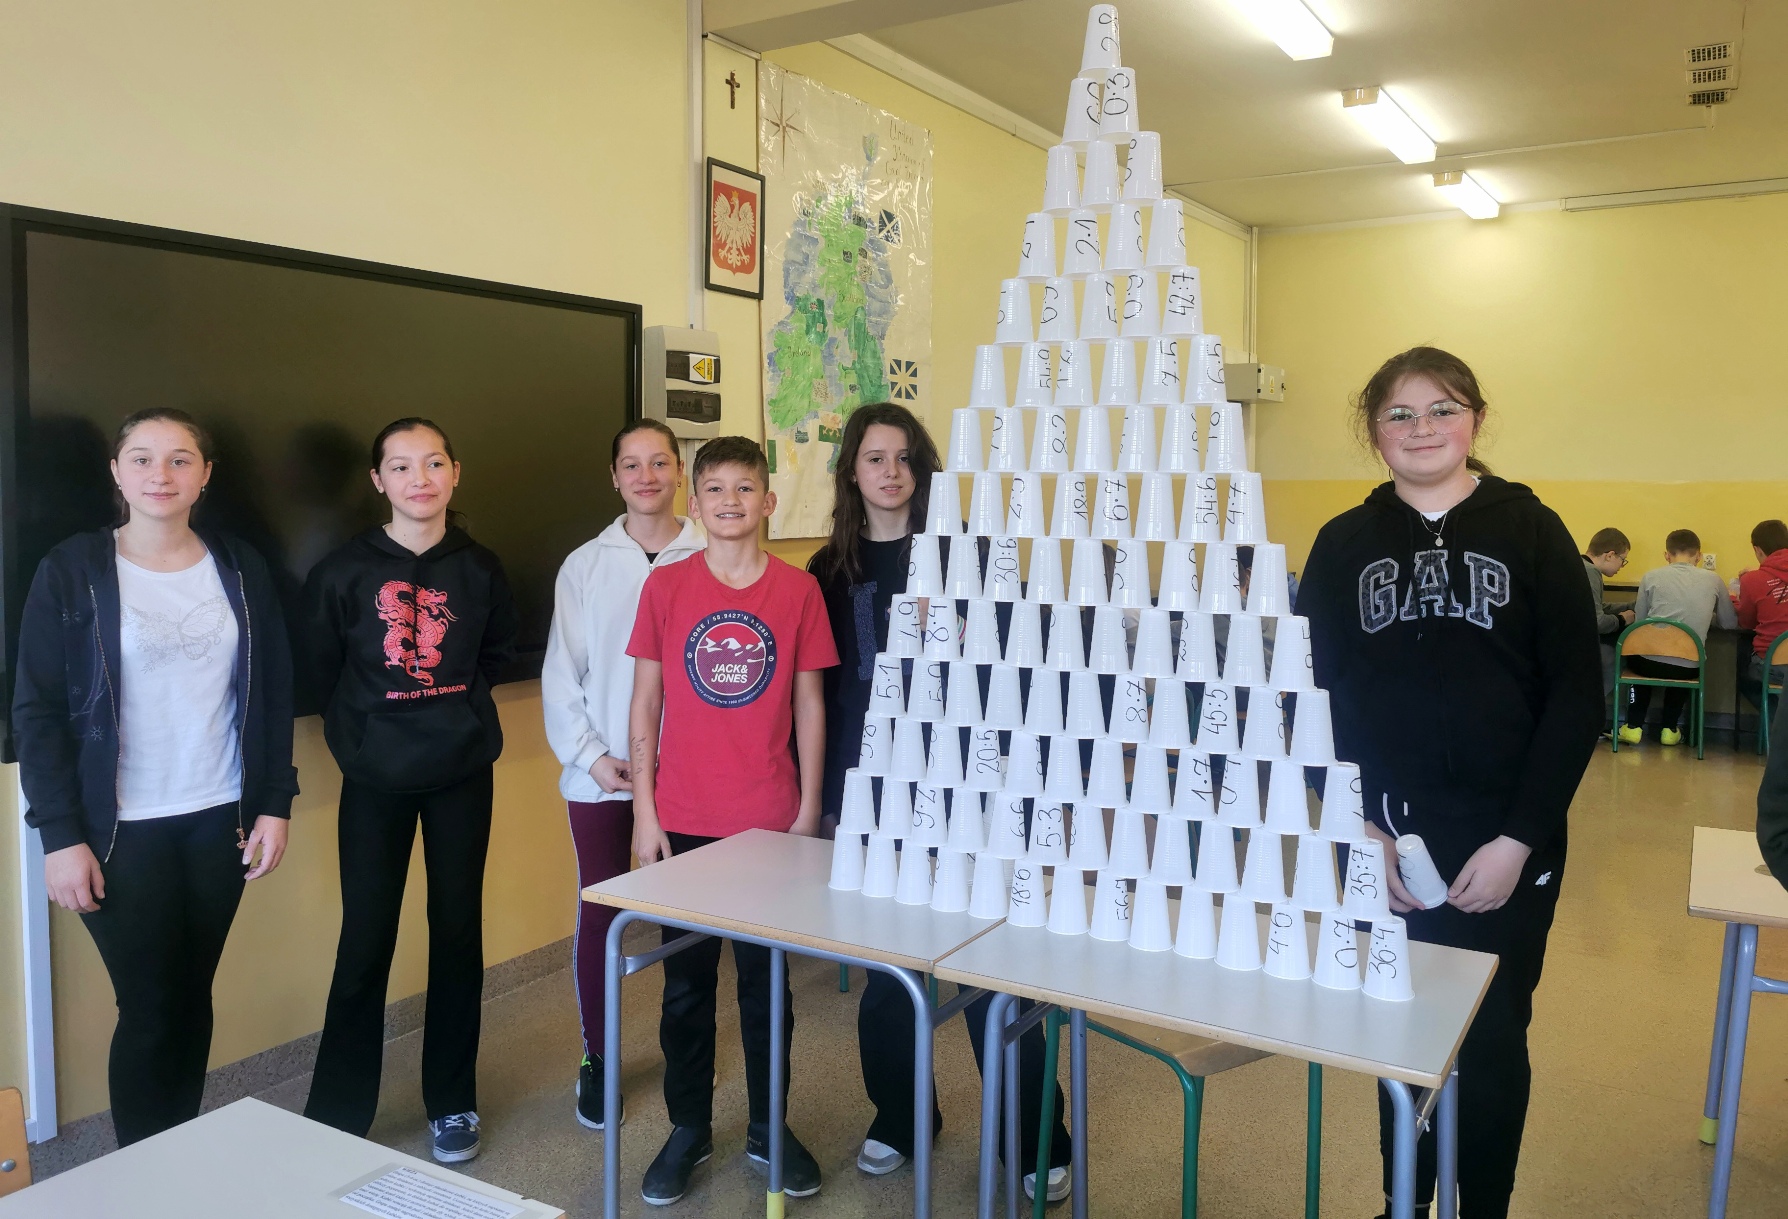 Sześcioro uczniów klasy 6b stoi wokół stolika. Na stoliku znajduje się zbudowana przez nich piramida z kubeczków. Na kubeczkach zapisane są iloczyny liczb.